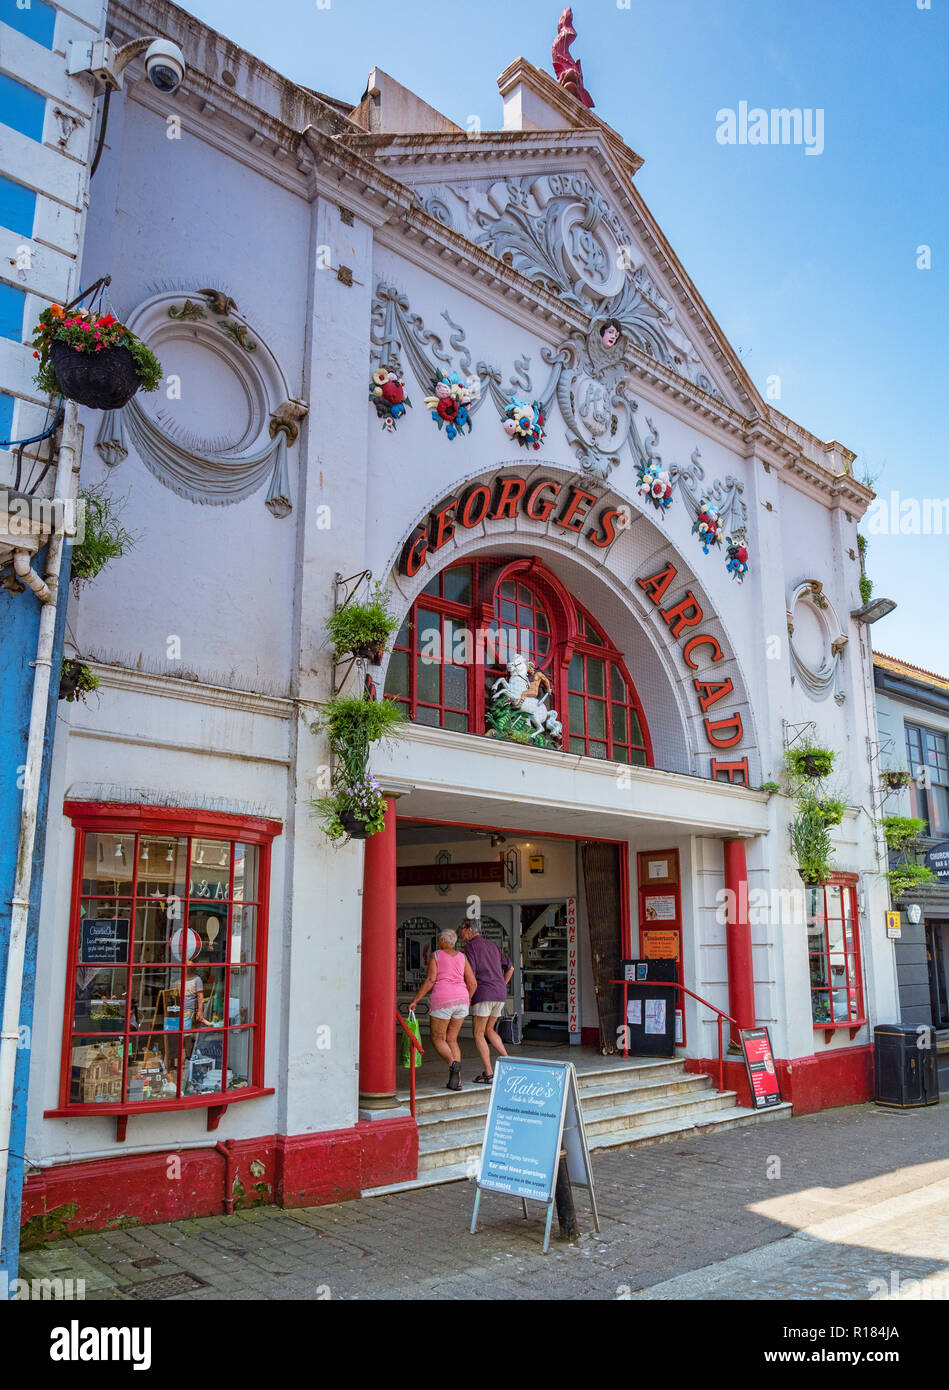 12 Juin 2018 : Falmouth, Cornwall, UK - St George's Arcade, la rue de l'église, construite en 1912 et à l'origine un cinéma, abrite aujourd'hui de boutiques. Banque D'Images